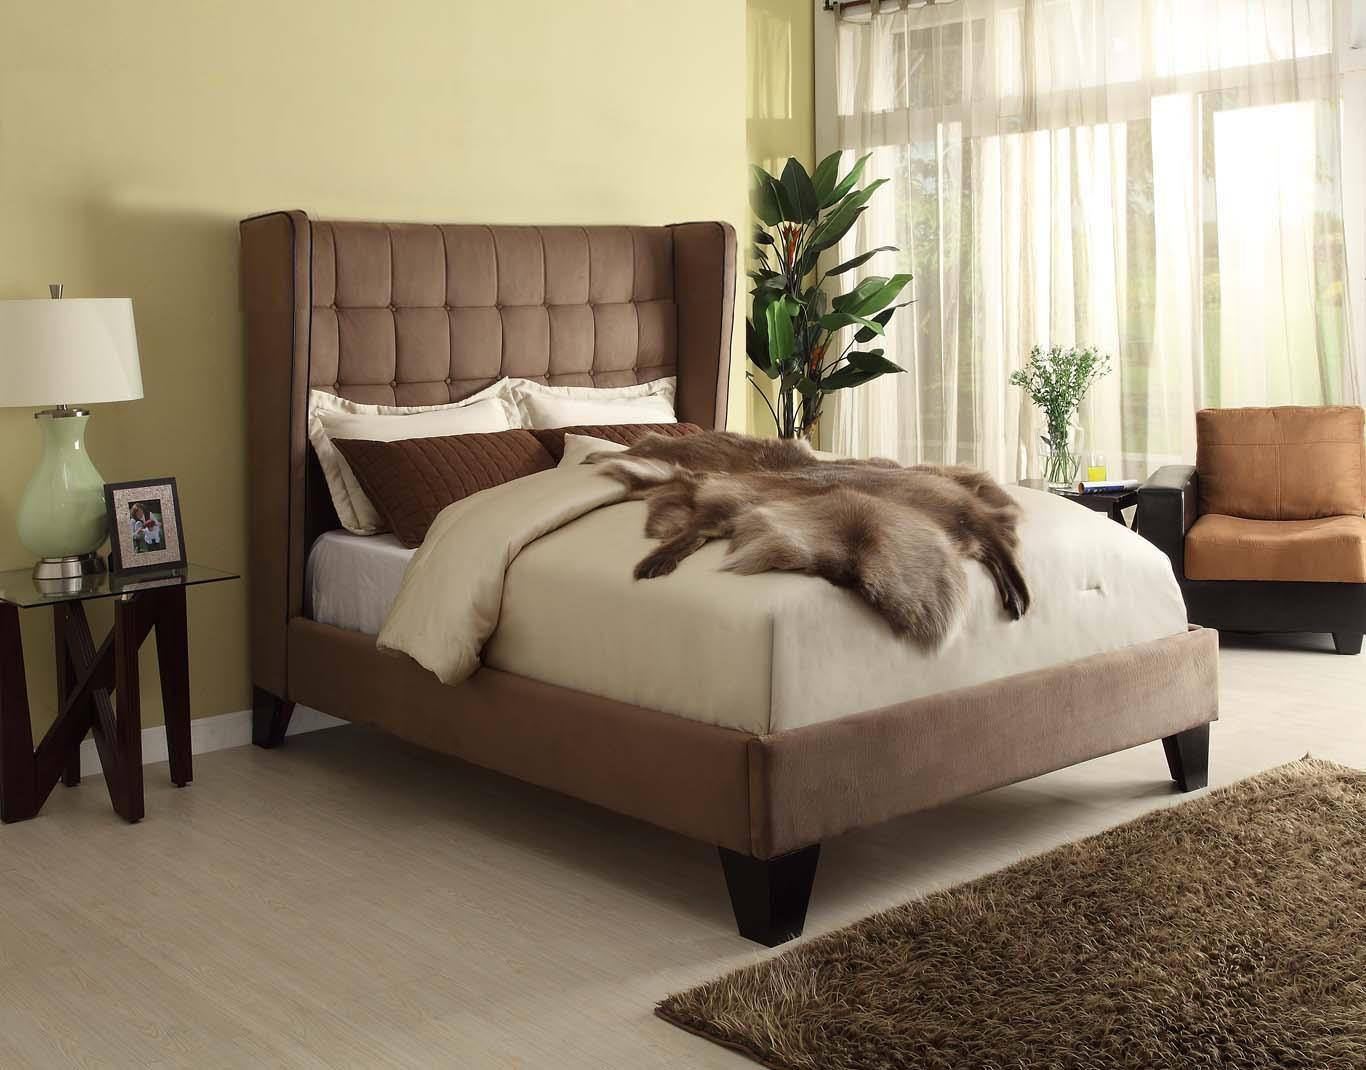 

    
MYCO Furniture 2961K Oakland Modern Brown Microfiber King Size Platform Bed
